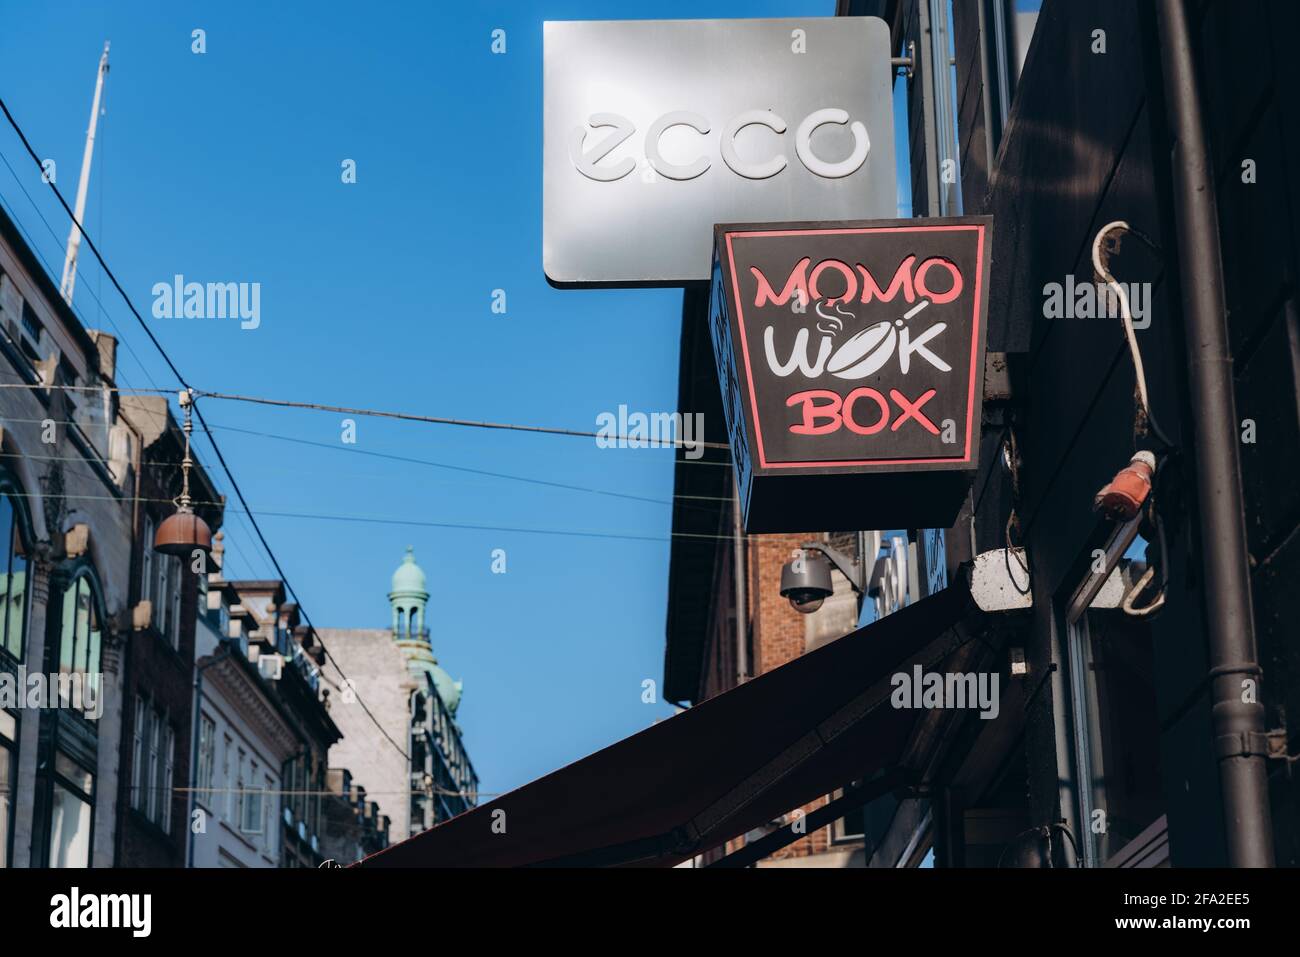 Copenhagen, Denmark - September 14, 2020. ECCO brand shop and Momo wok box  asian restaurant on shopping street in Copenhagen Stock Photo - Alamy